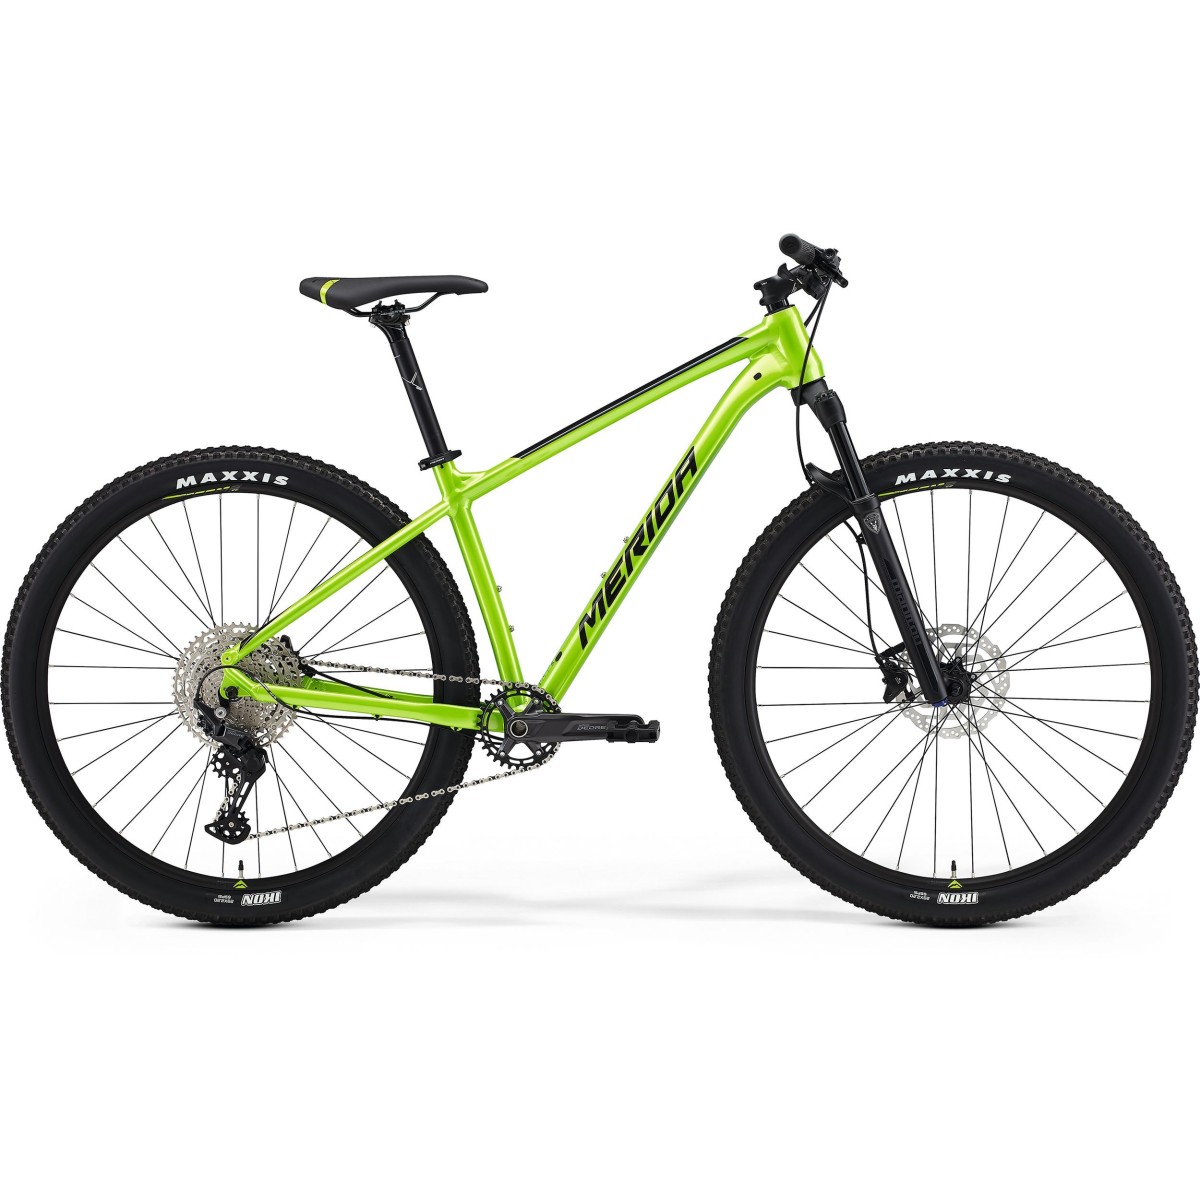 MERIDA BIG NINE 400 bicycle - green